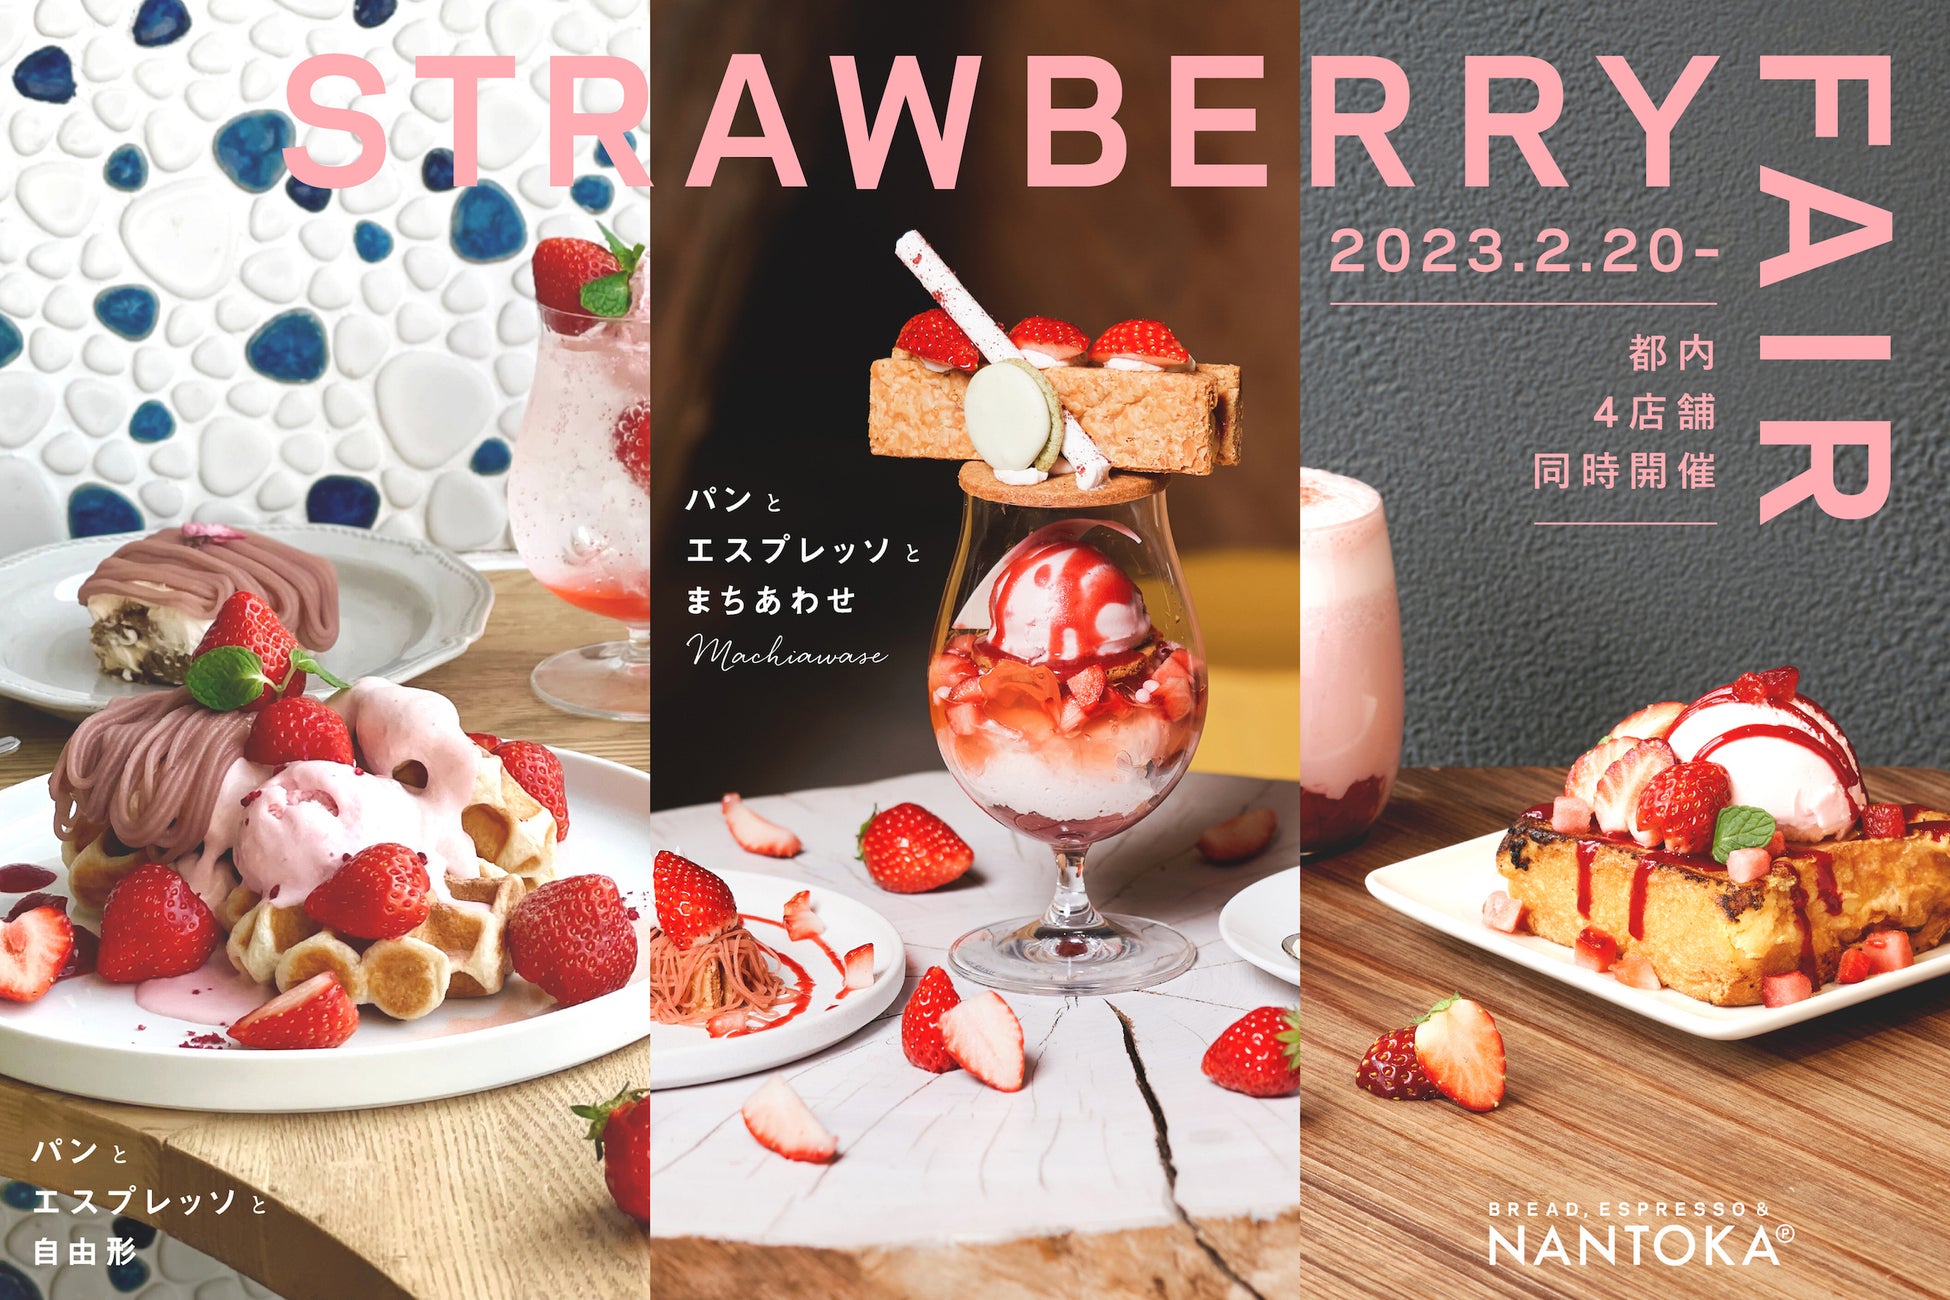 ３日間限定！食いしん坊を魅了する“旨いもん”が大集結！「ISETAN×dancyuフェア」を伊勢丹新宿店で2月24日(金)～26日(日)に開催いたします。